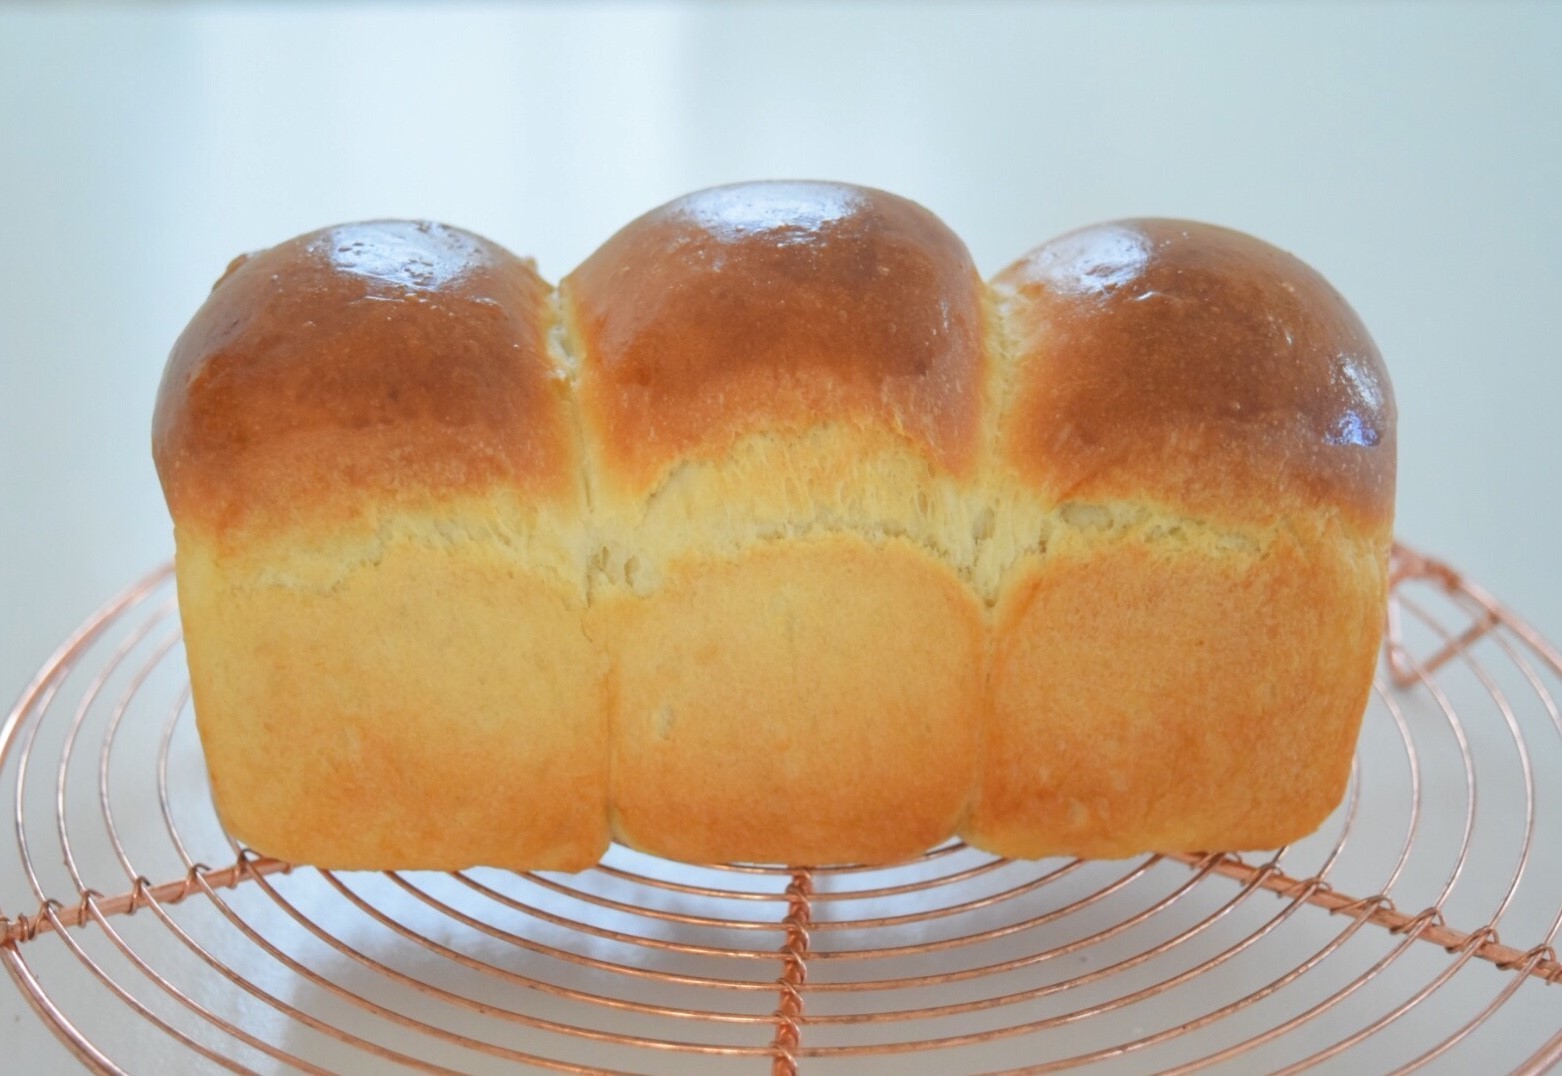 電子レンジ発酵で時短の手作り食パン! パウンド型を使う簡単レシピ